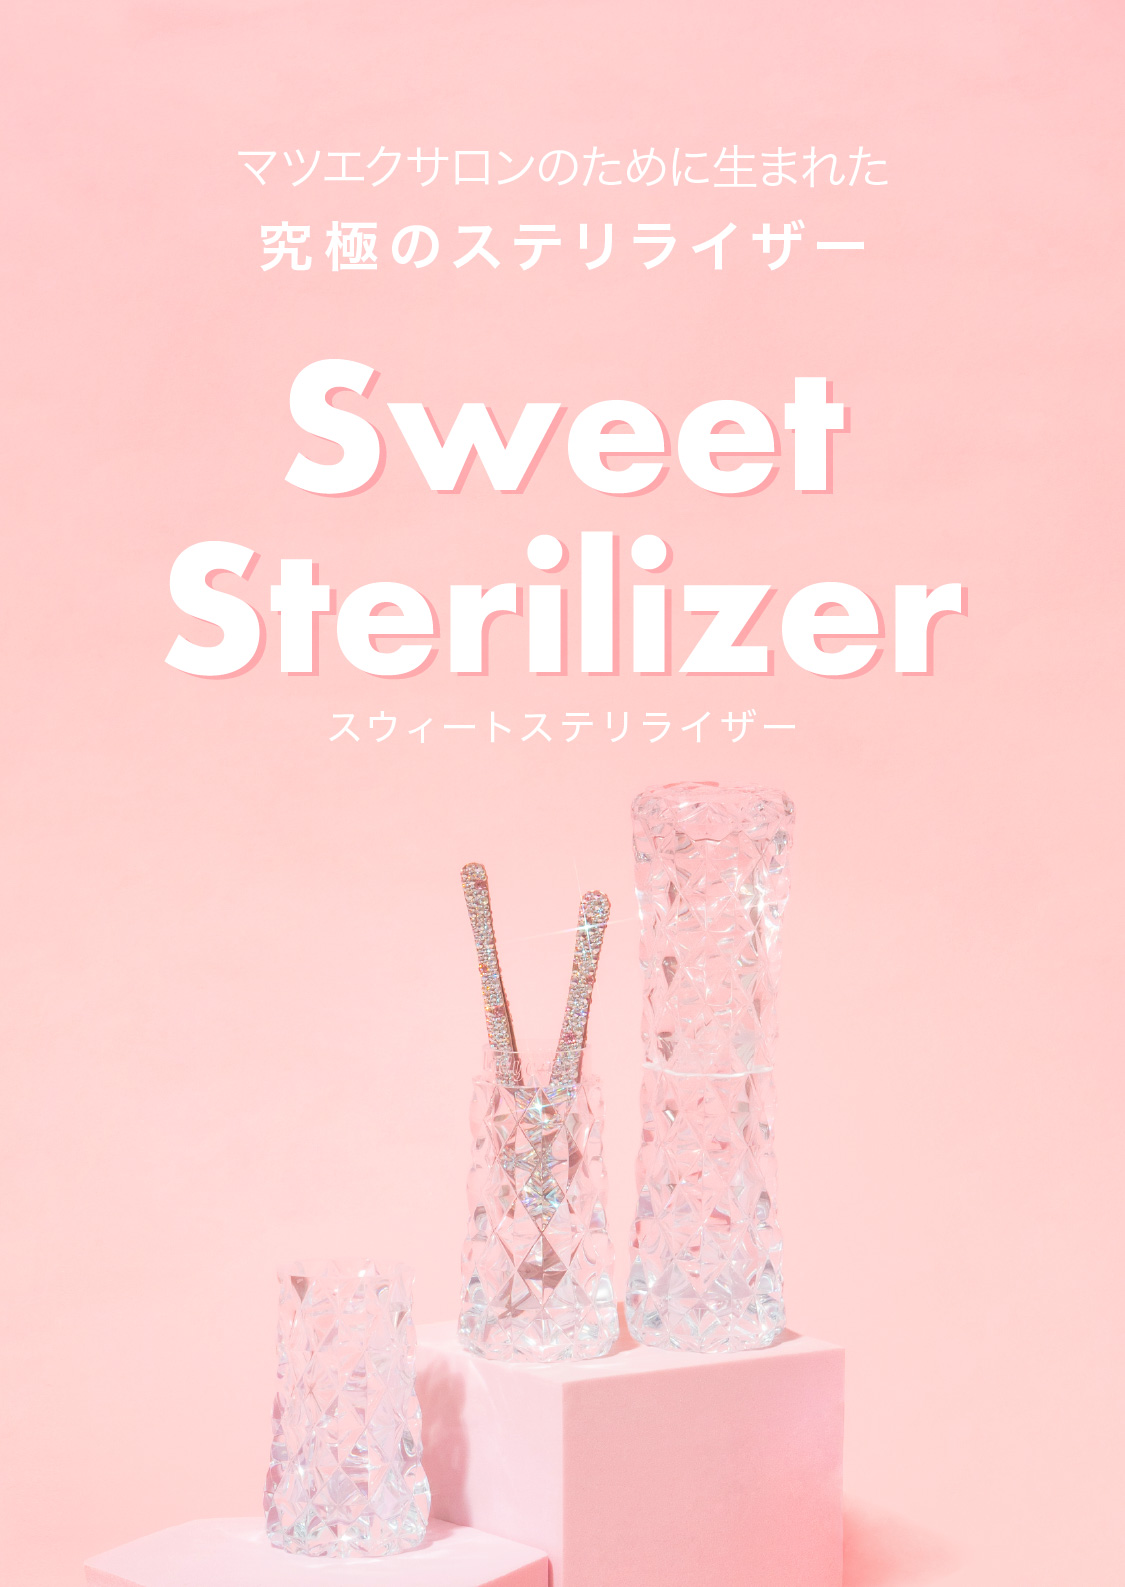 Tweezers Sterilizer